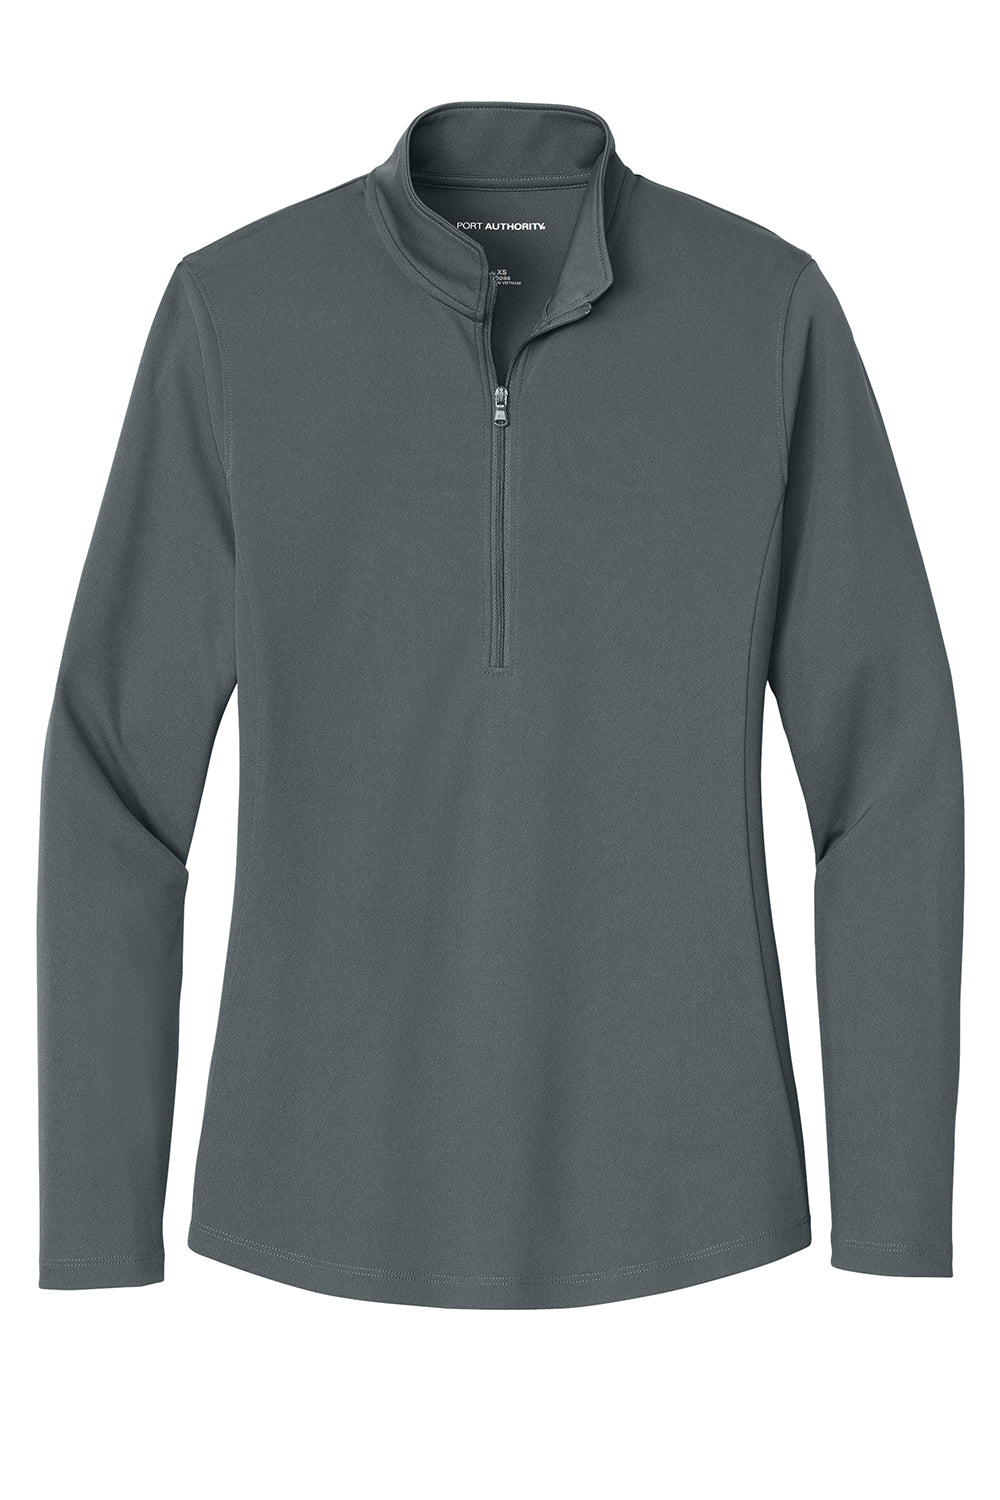 Port Authority LK112 Womens Dry Zone UV Micro Mesh 1/4 Zip Sweatshirt Graphite Grey Flat Front